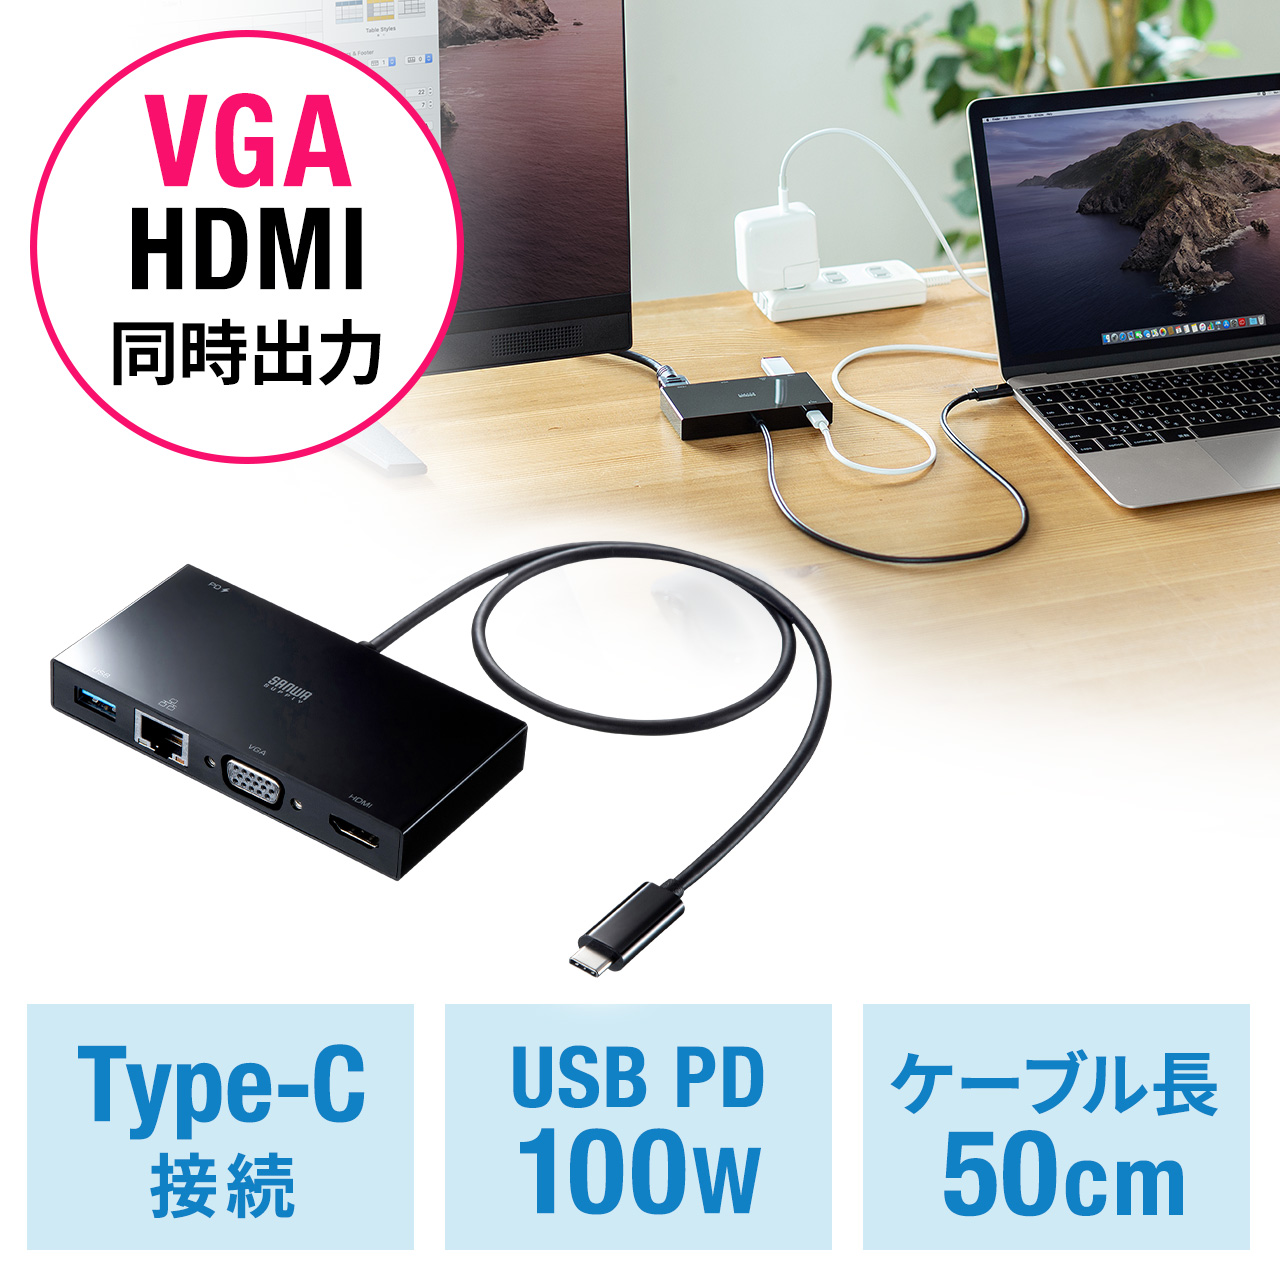 パソコン周辺機器 サンワダイレクト USB Type Cドッキングステーション 11in1 PD100W USB×3 HDMI/LAN/ Display